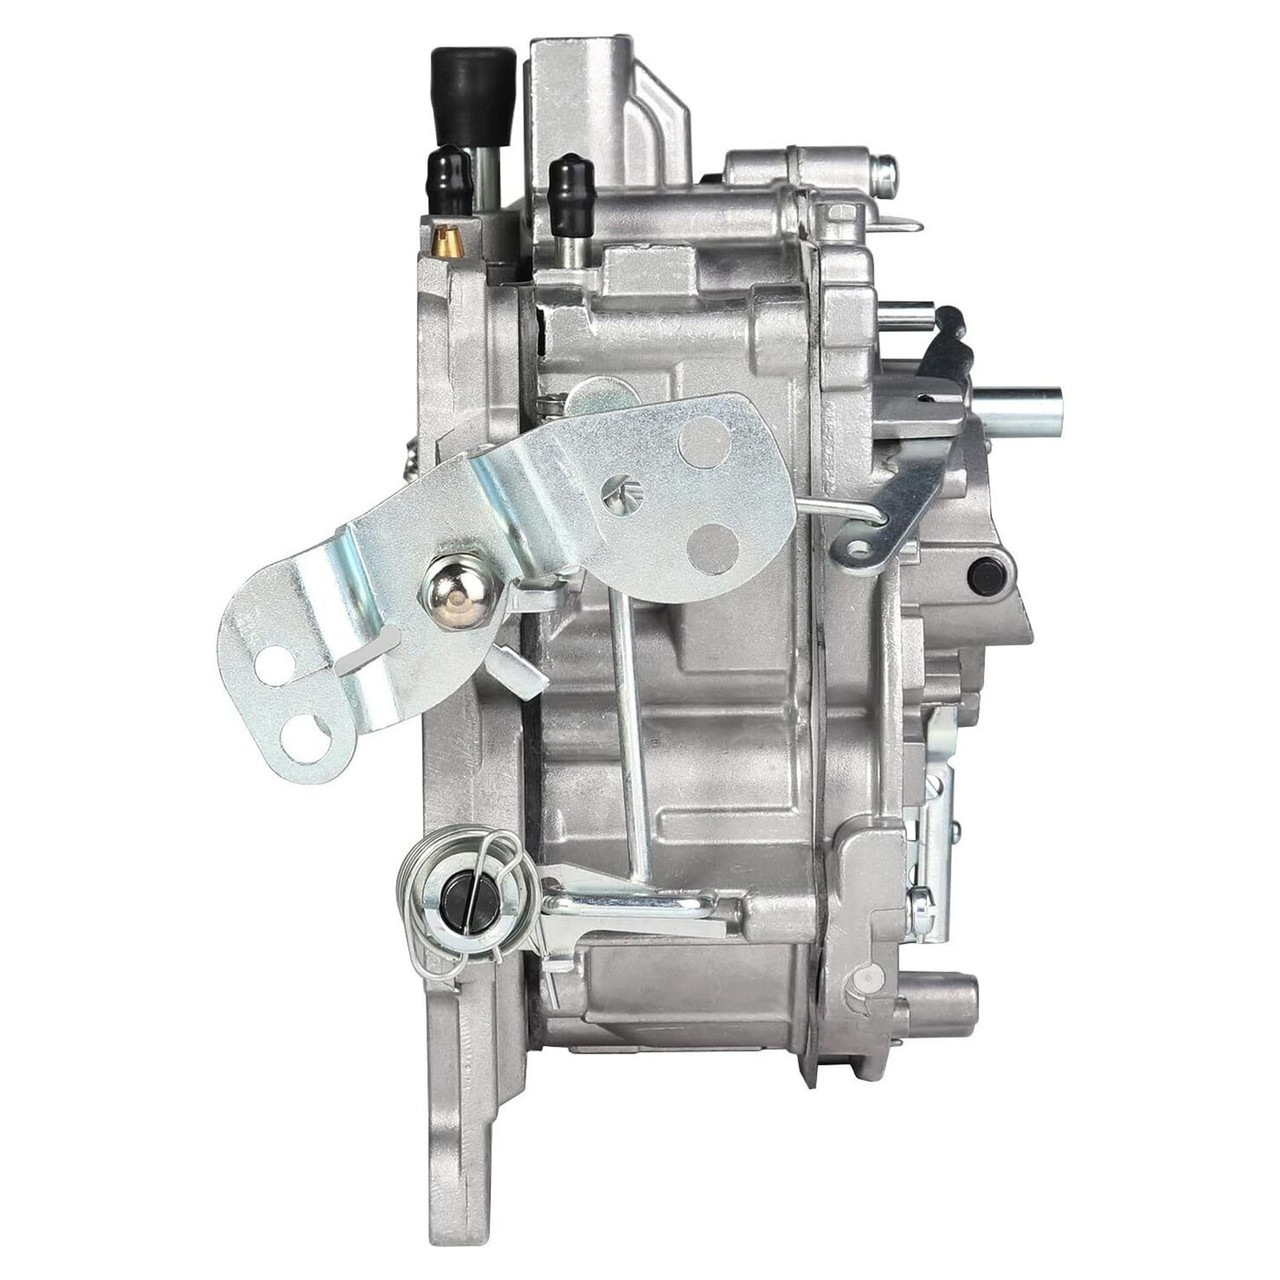 Quadrajet Carburetor For Chevy 327 350 427 454 750 CFM 4 Barrel 4MV